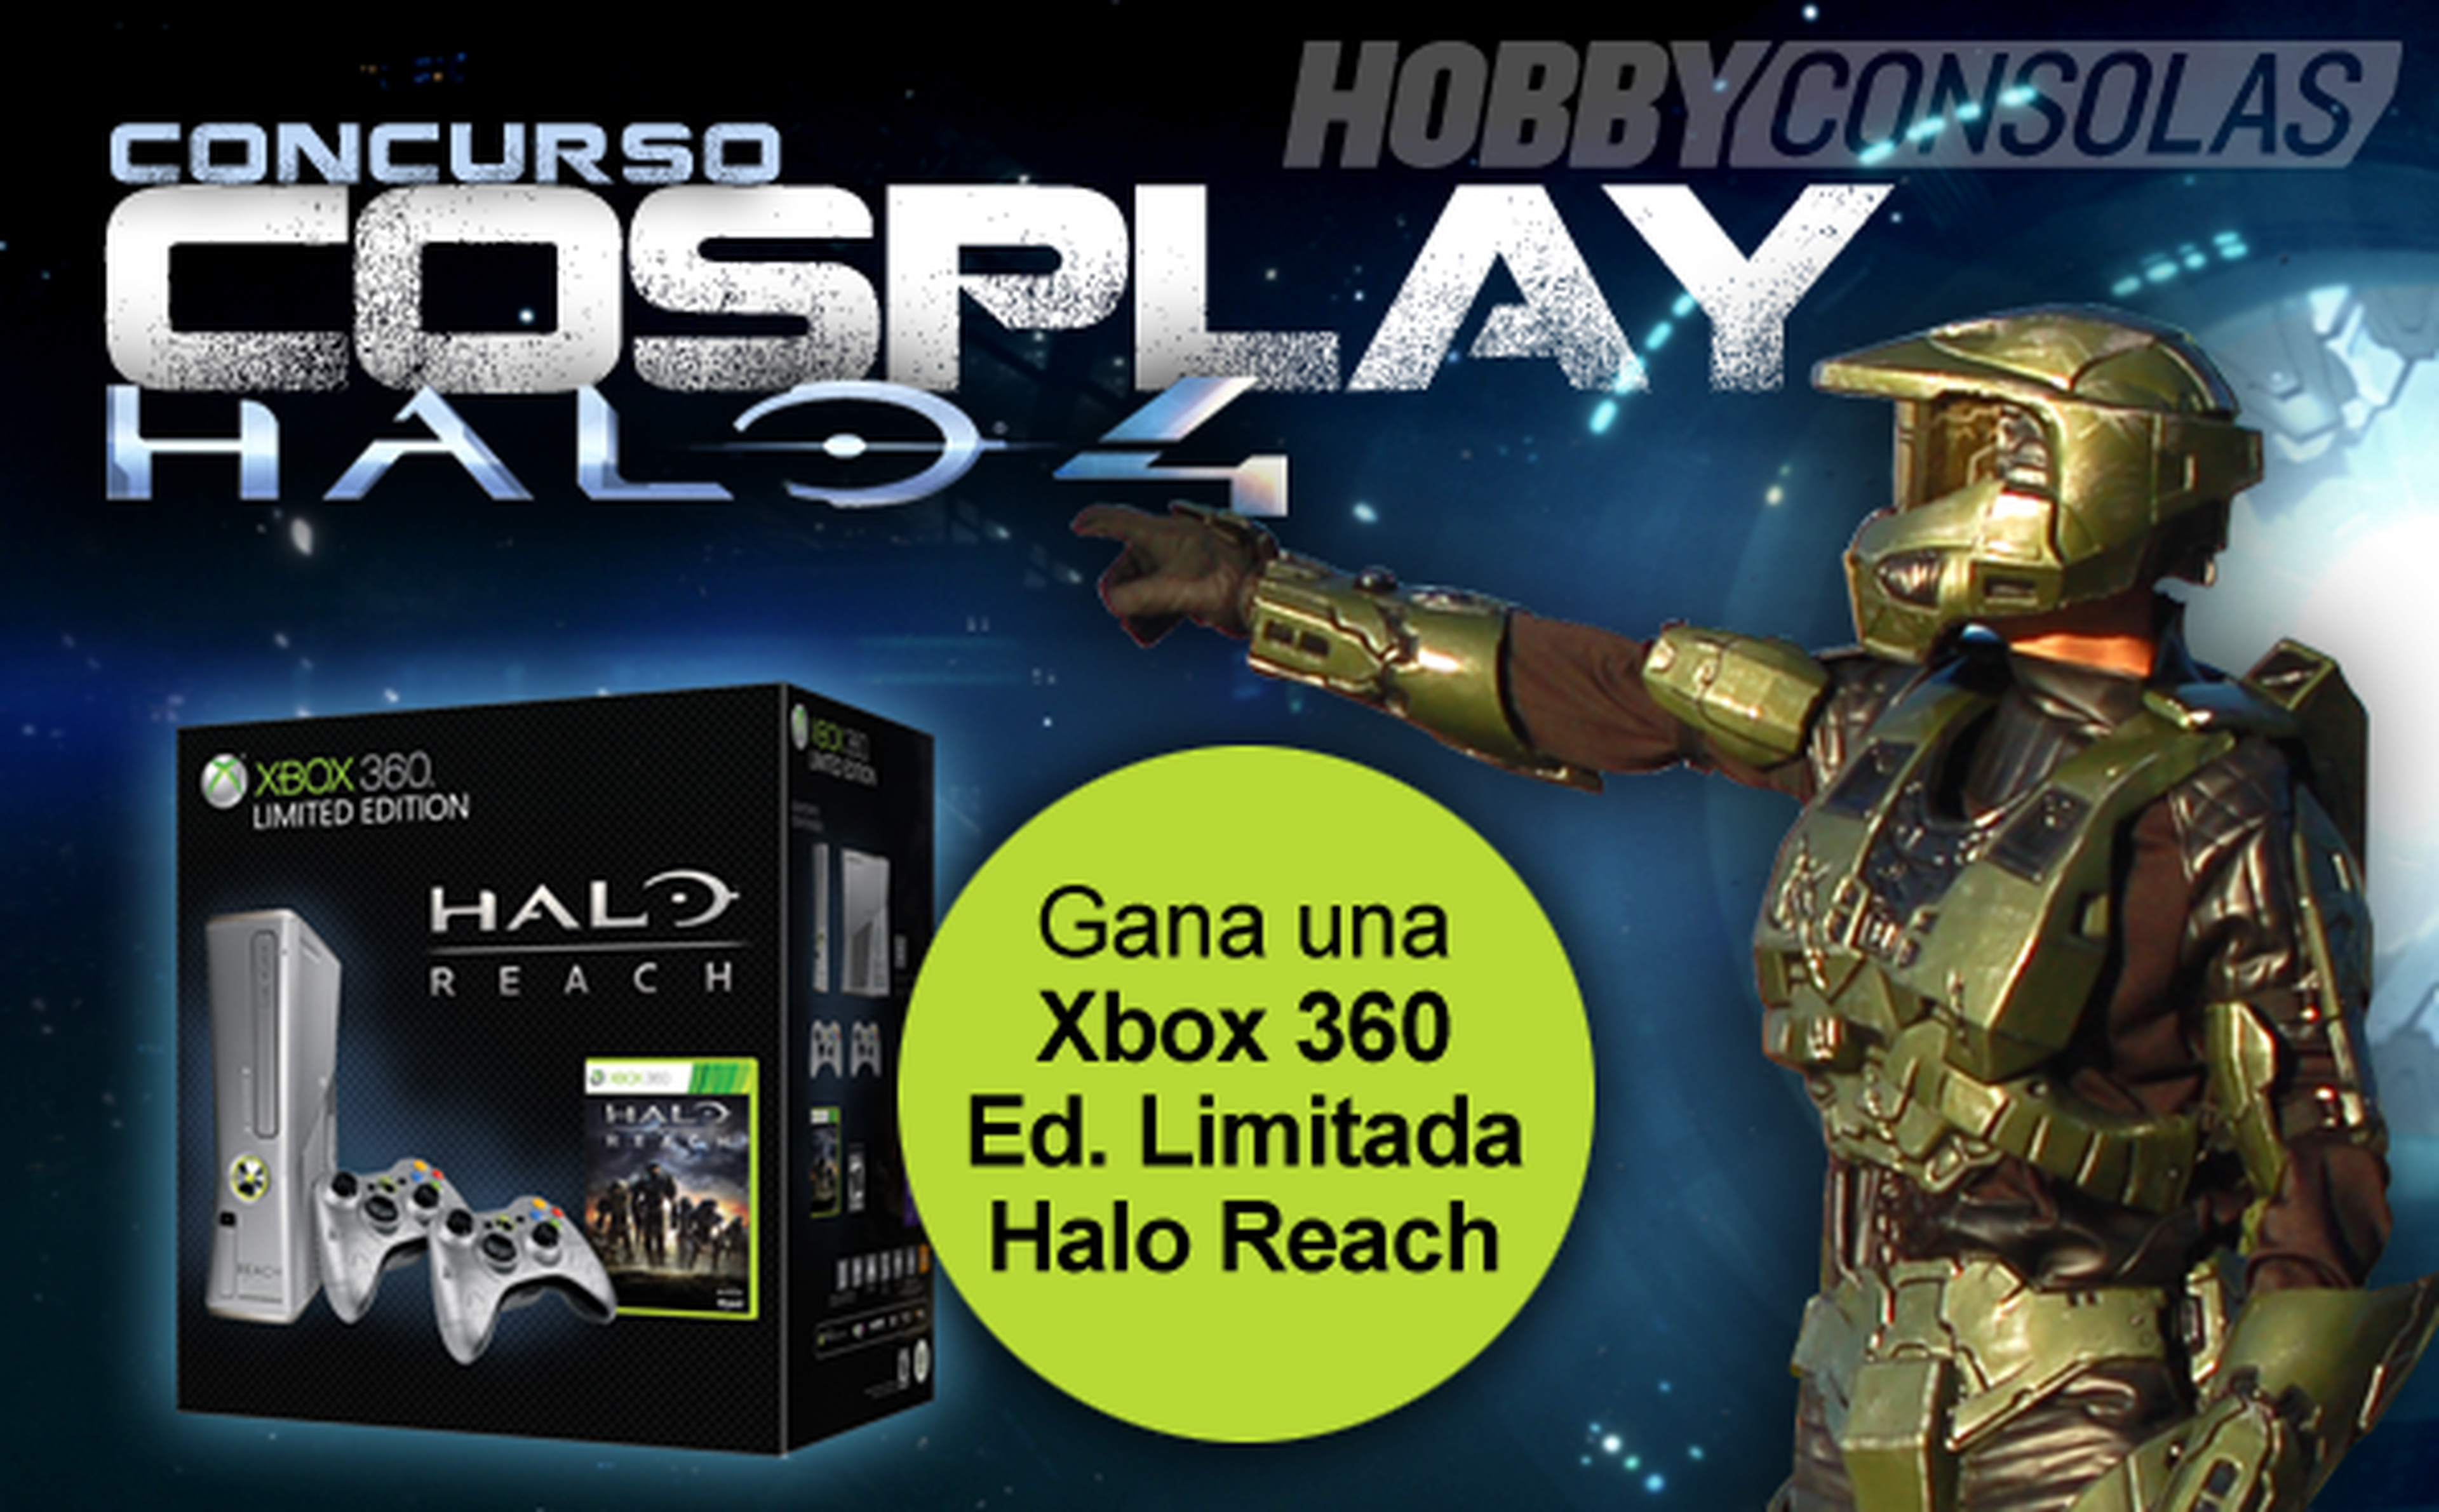 Concurso Cosplay de Halo en Hobbynews.es